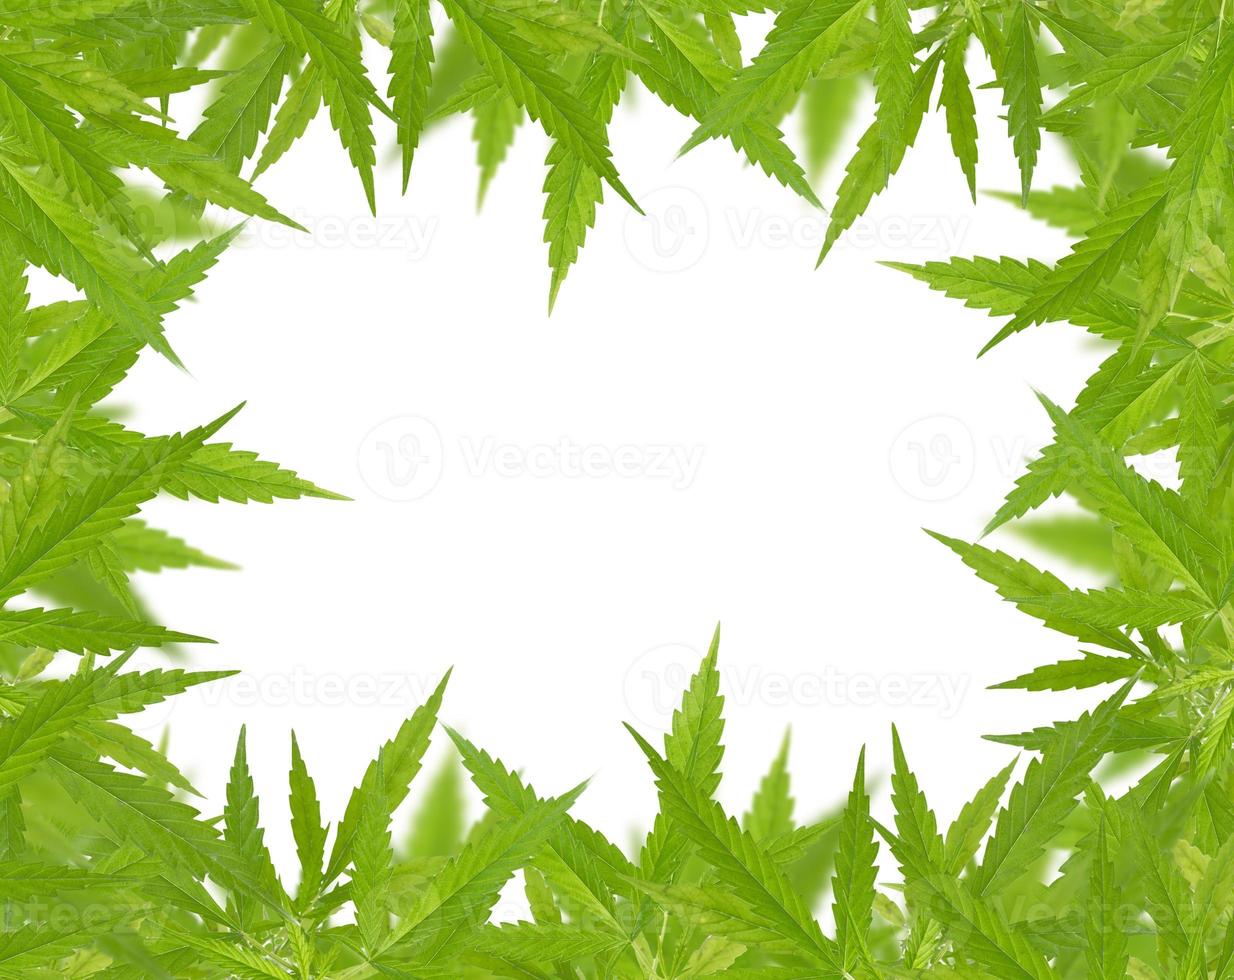 hellgrüner Cannabis-Sativa-Blattrahmen foto